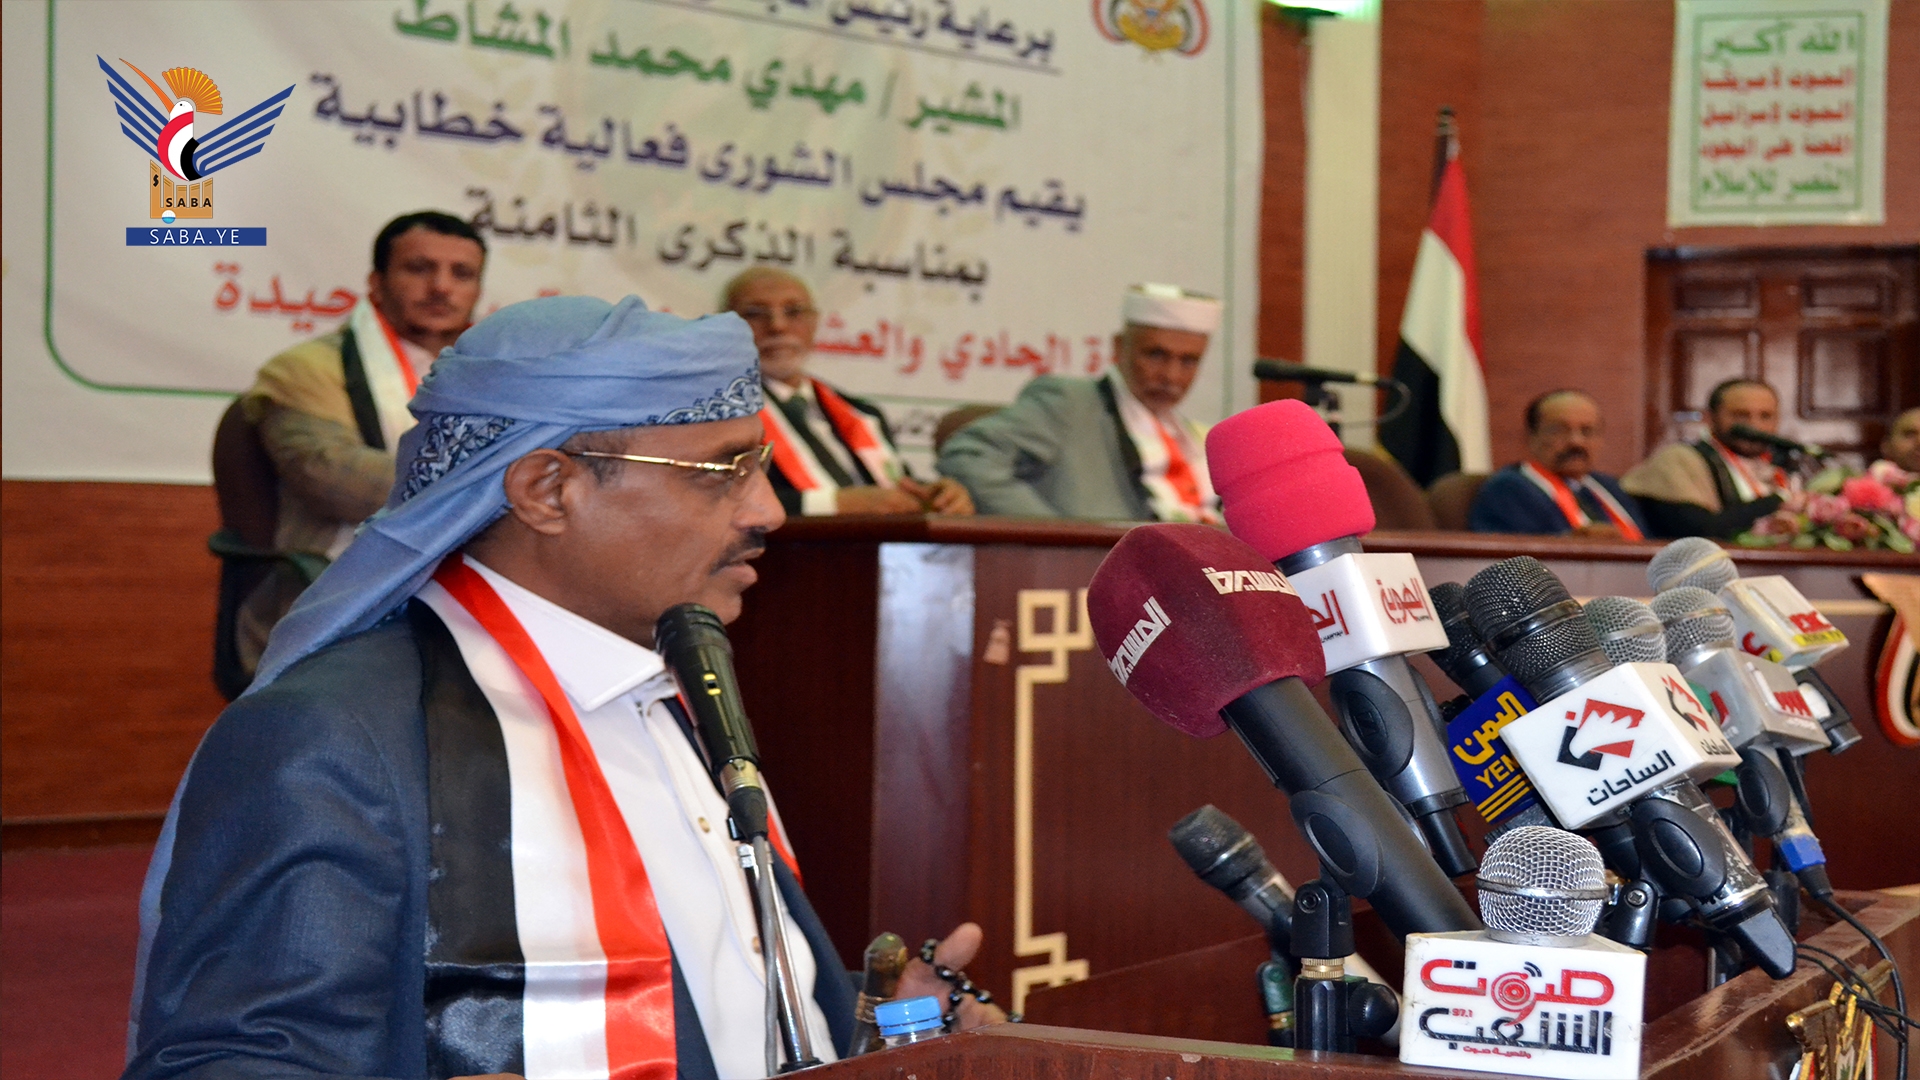 عضو "السياسي الأعلى" التابع للحوثيين: نحن لا نعرف من يعين الوزراء.. ولو لا قضية فلسطين لأكلنا الشعب